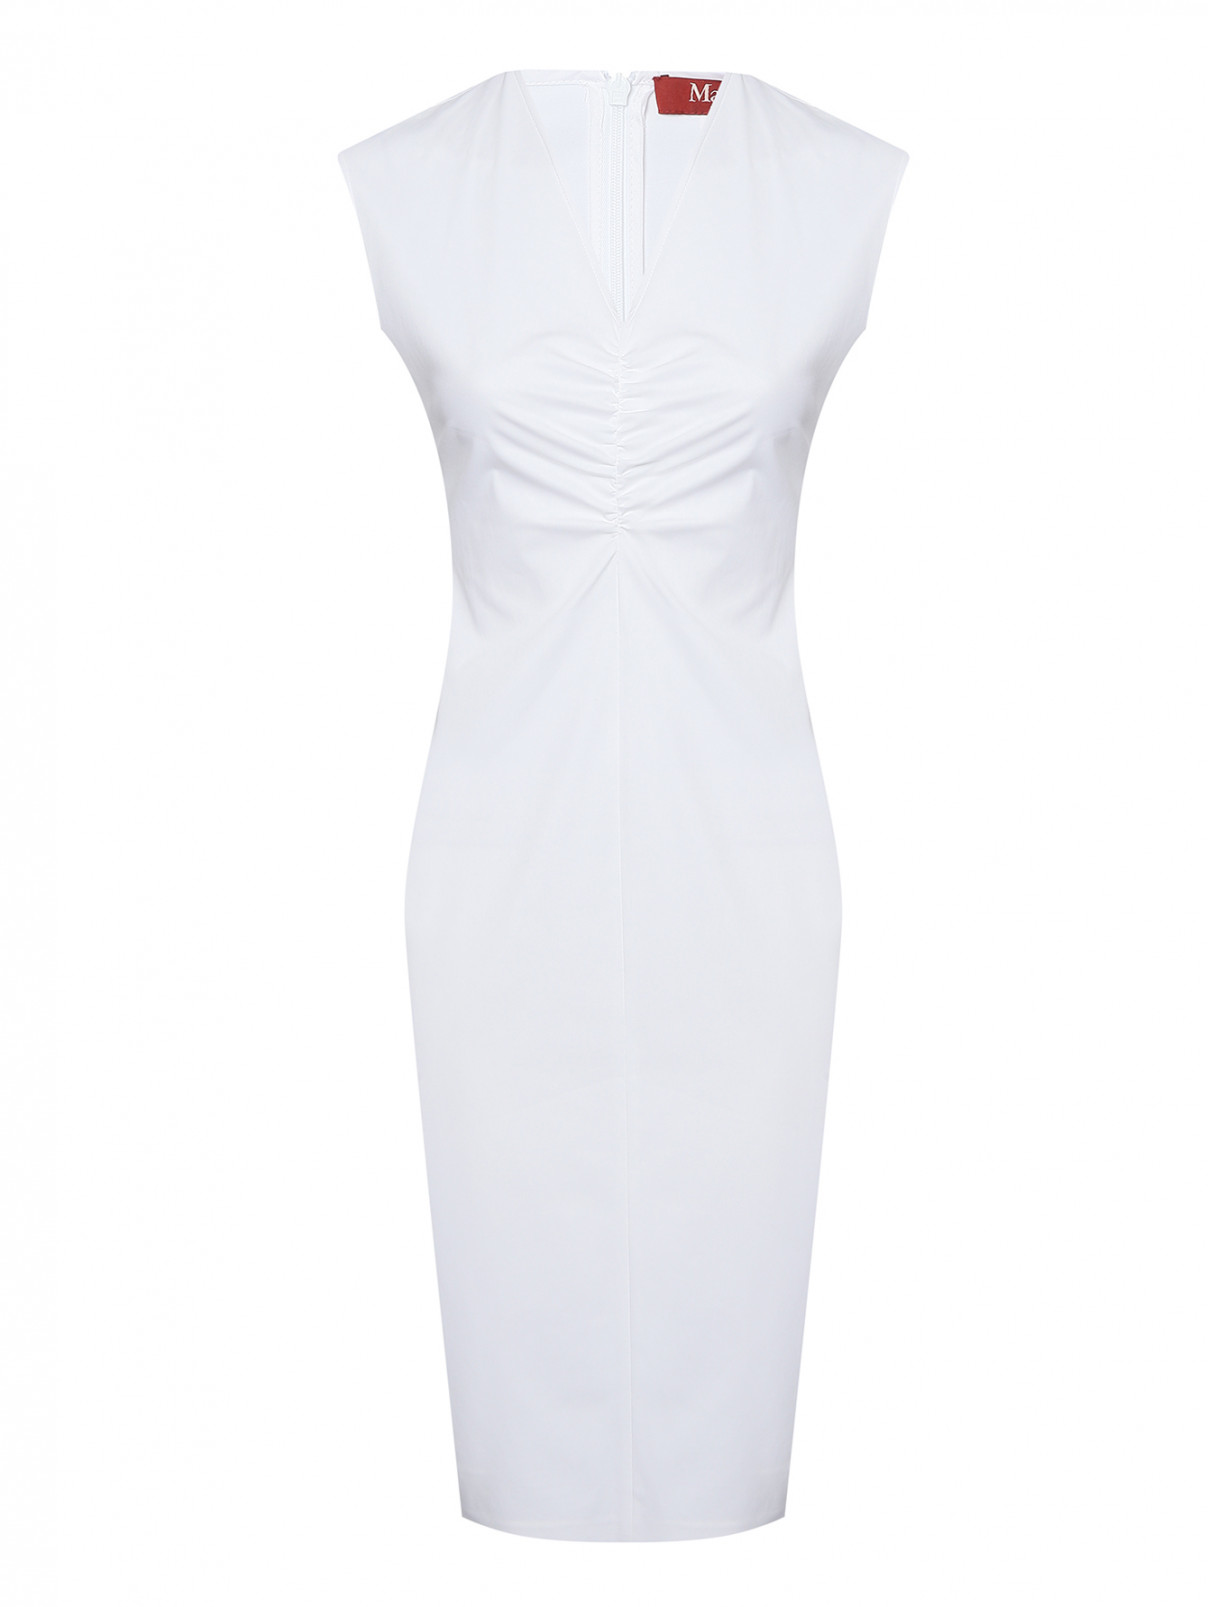 Платье-футляр из хлопка со сборкой Max Mara  –  Общий вид  – Цвет:  Белый